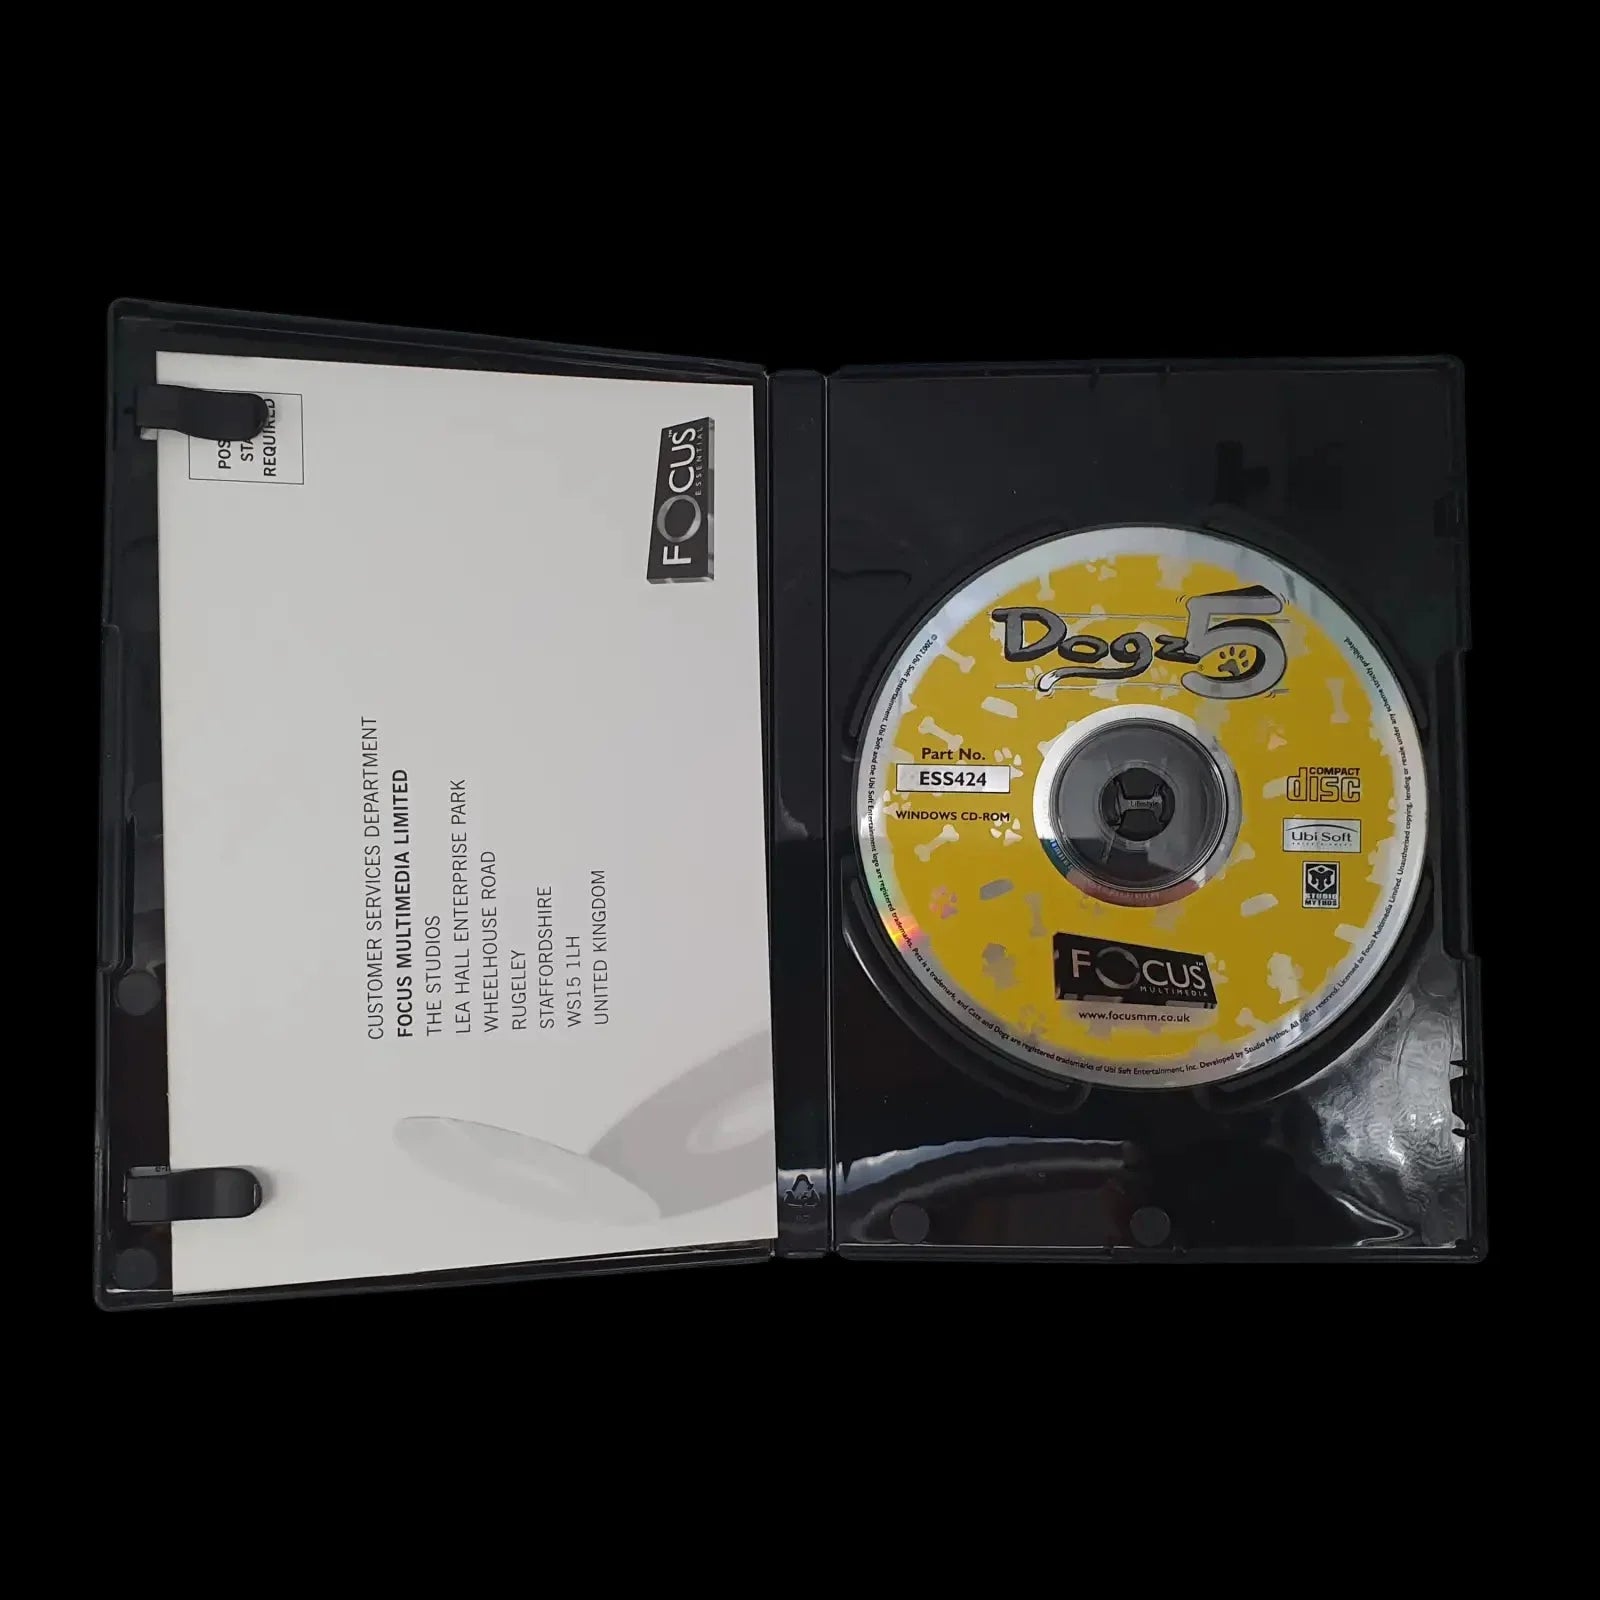 Dogz 5 Pc Ubisoft 2002 Video Game Vintage - Games - 3 - 2473